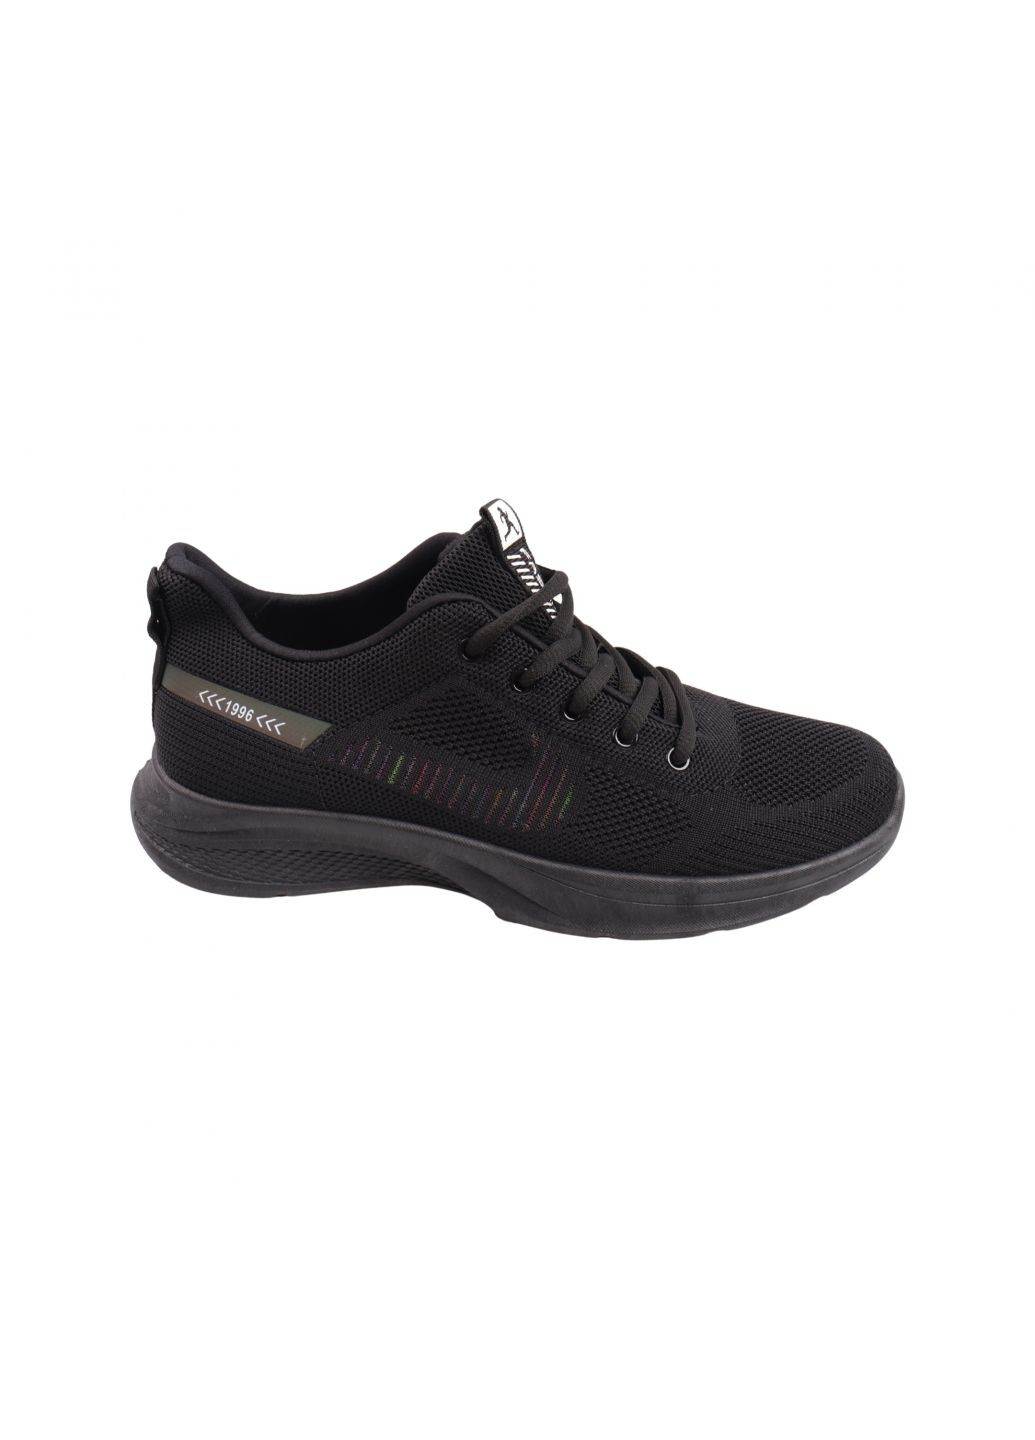 Чорні кросівки чоловічі чорні текстиль Fashion 58-23LK